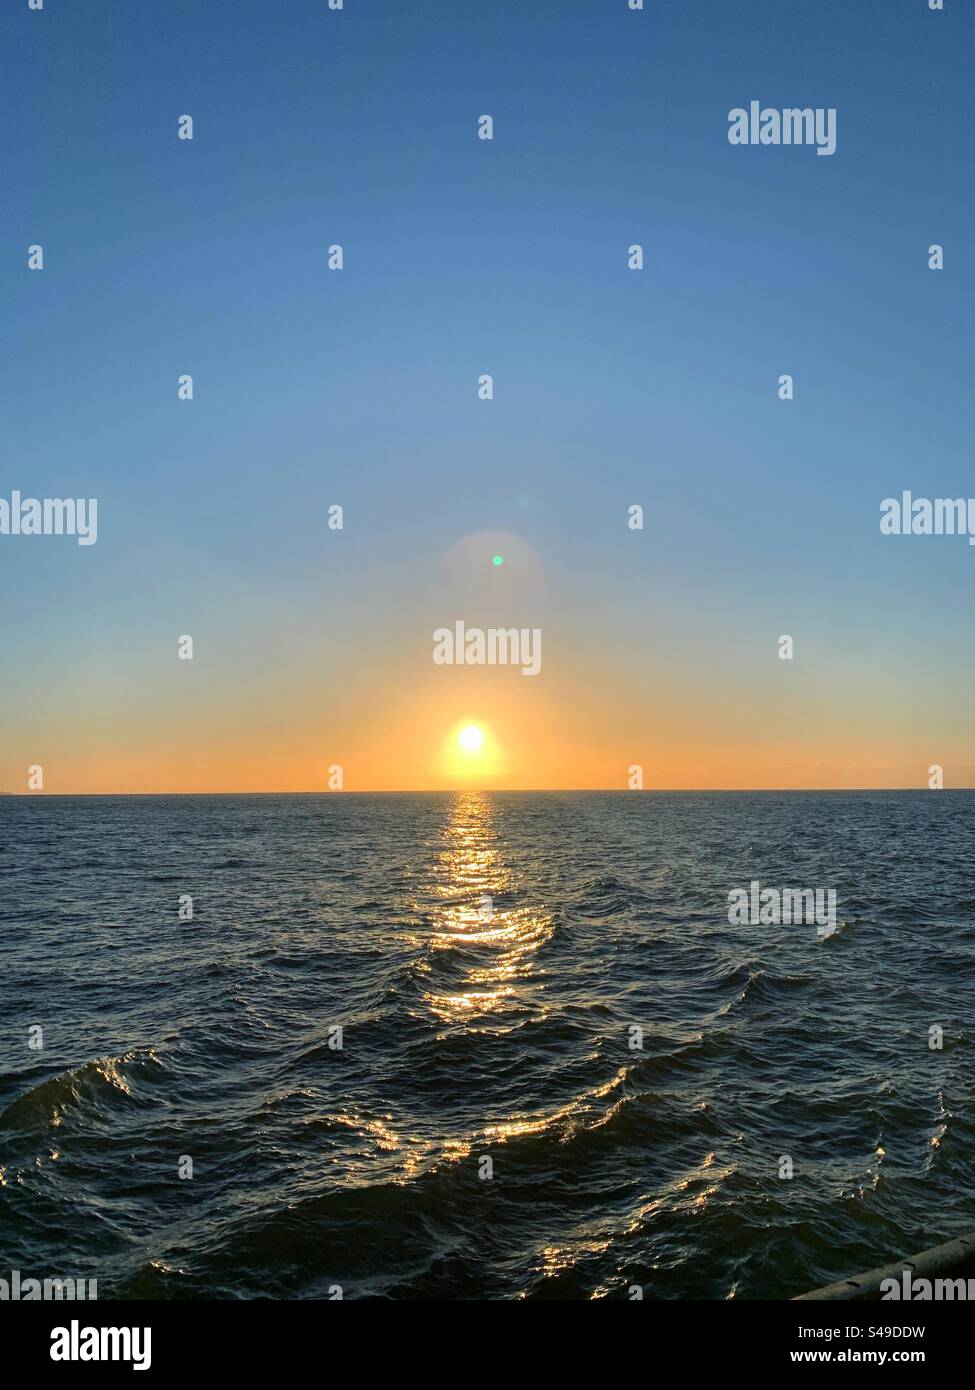 Sonnenuntergang auf dem Meer. Nichts als Wasser, wo man hinsieht. Die Sonne geht über dem ruhigen Wasserhorizont unter. Stockfoto